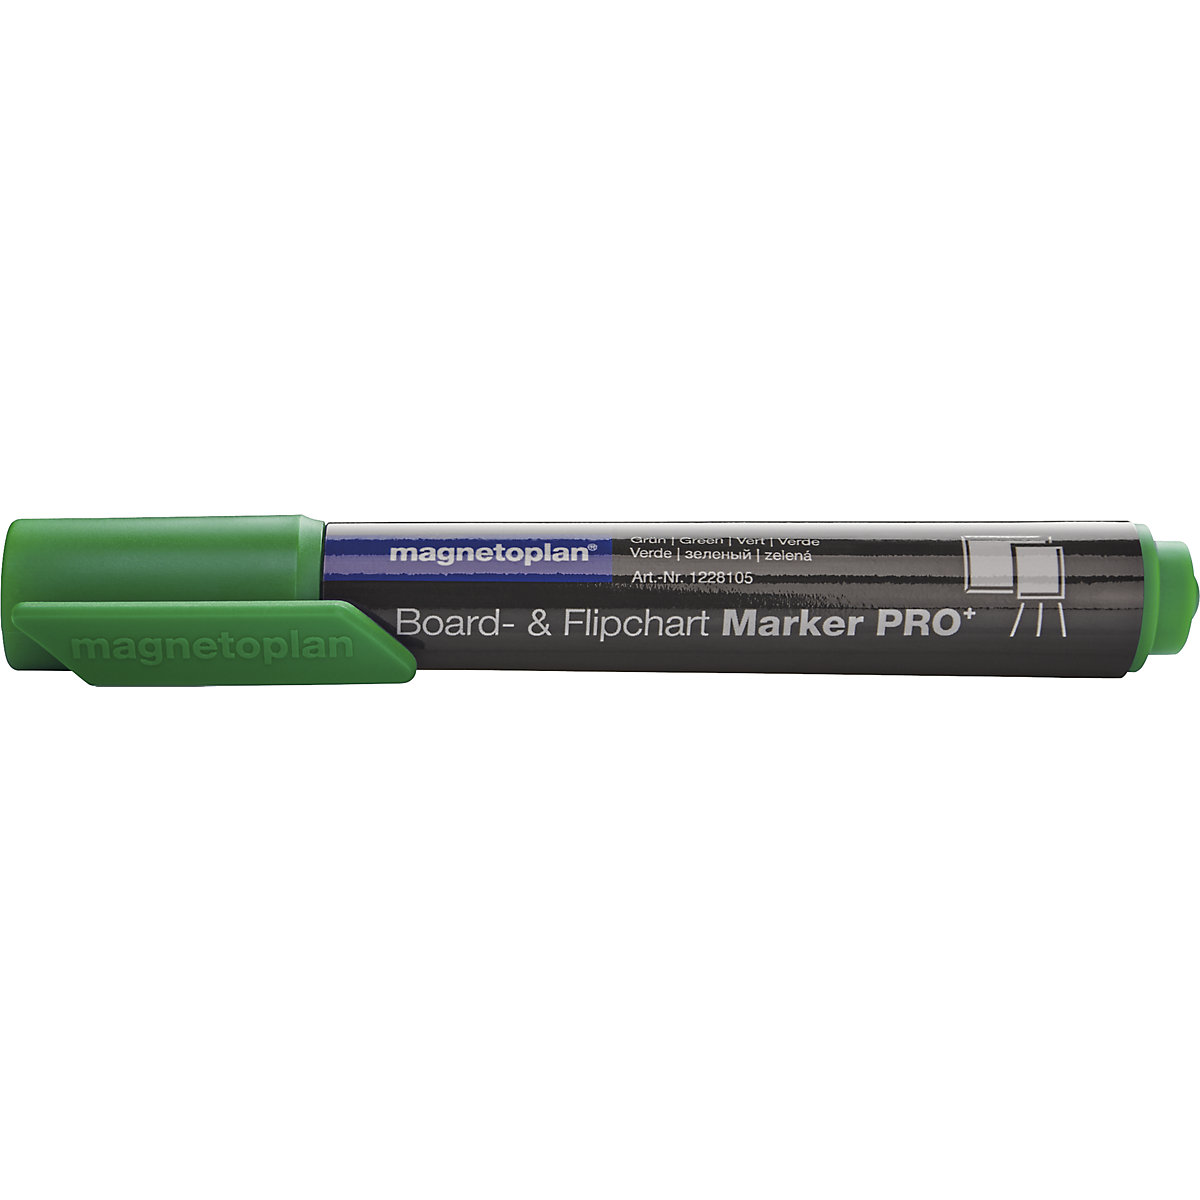 Flomaster za table in papir na stojalih PRO+ – magnetoplan, debelina črt 1,5 – 3 mm, DE 24 kosov, zelene barve-3